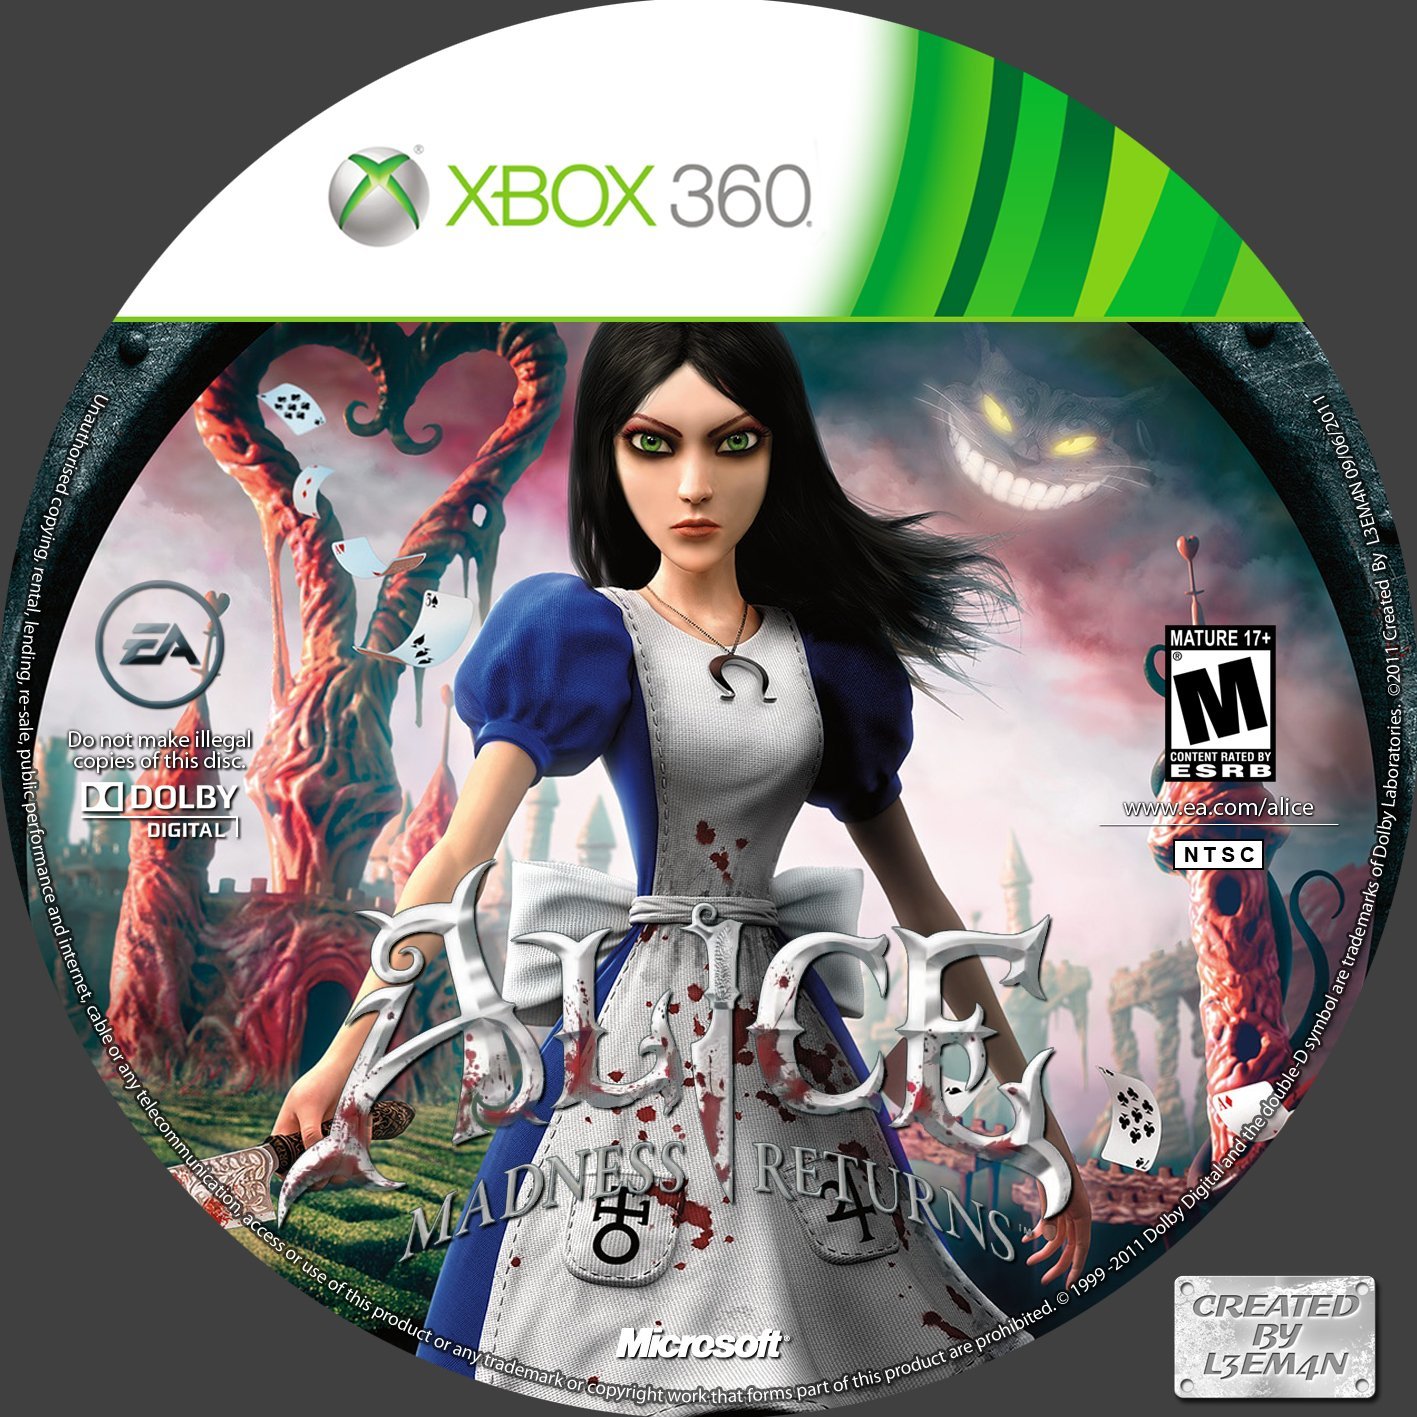 Умеет ли алиса играть в слова. Алиса игра на хбокс 360. Alice Madness Returns диск. Alice Madness Returns Xbox 360. Alice Madness Returns Xbox 360 обложка.